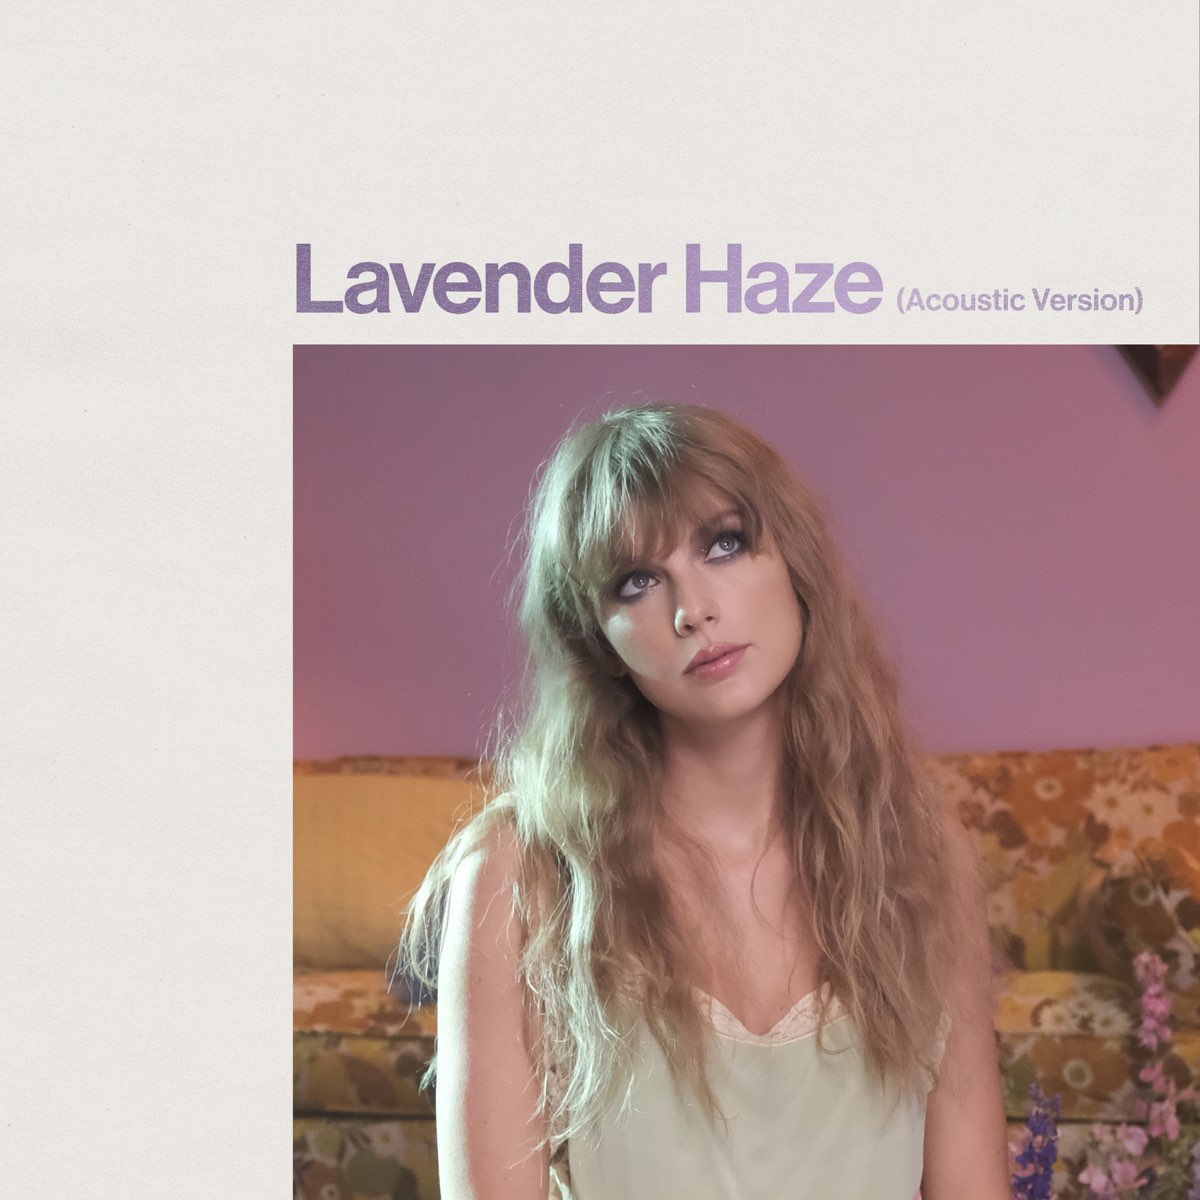 Lavender Haze (Acoustic Version) - Single - Album by Taylor Swift